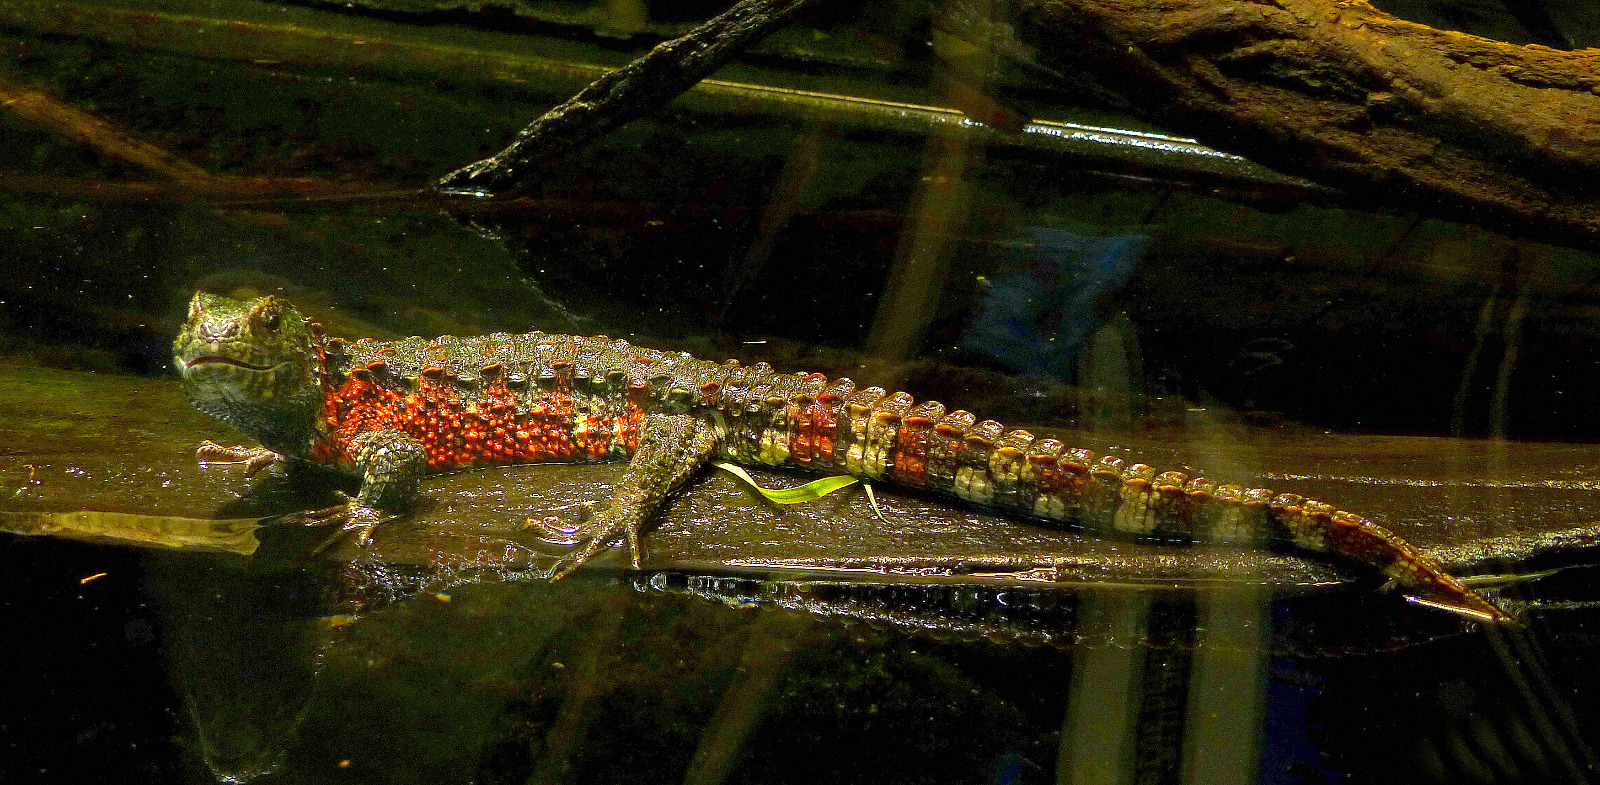 Chinesische Krokodilschwanzechse